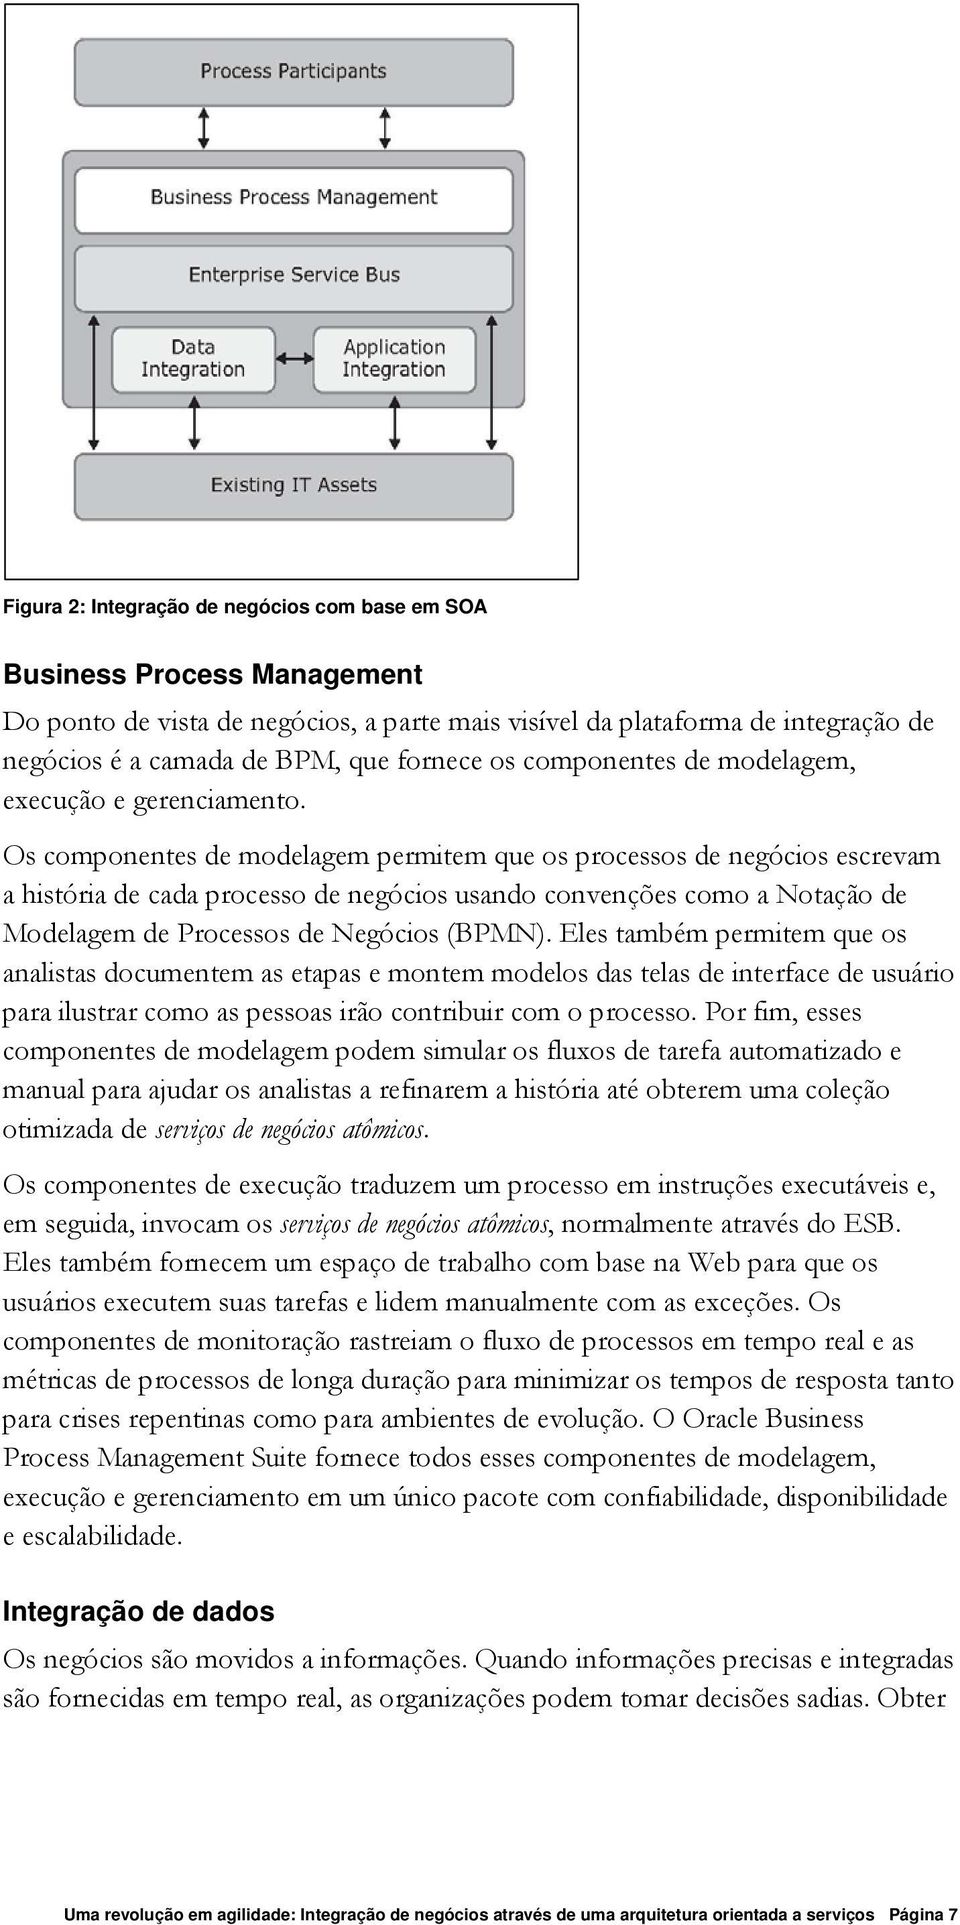 Os componentes de modelagem permitem que os processos de negócios escrevam a história de cada processo de negócios usando convenções como a Notação de Modelagem de Processos de Negócios (BPMN).